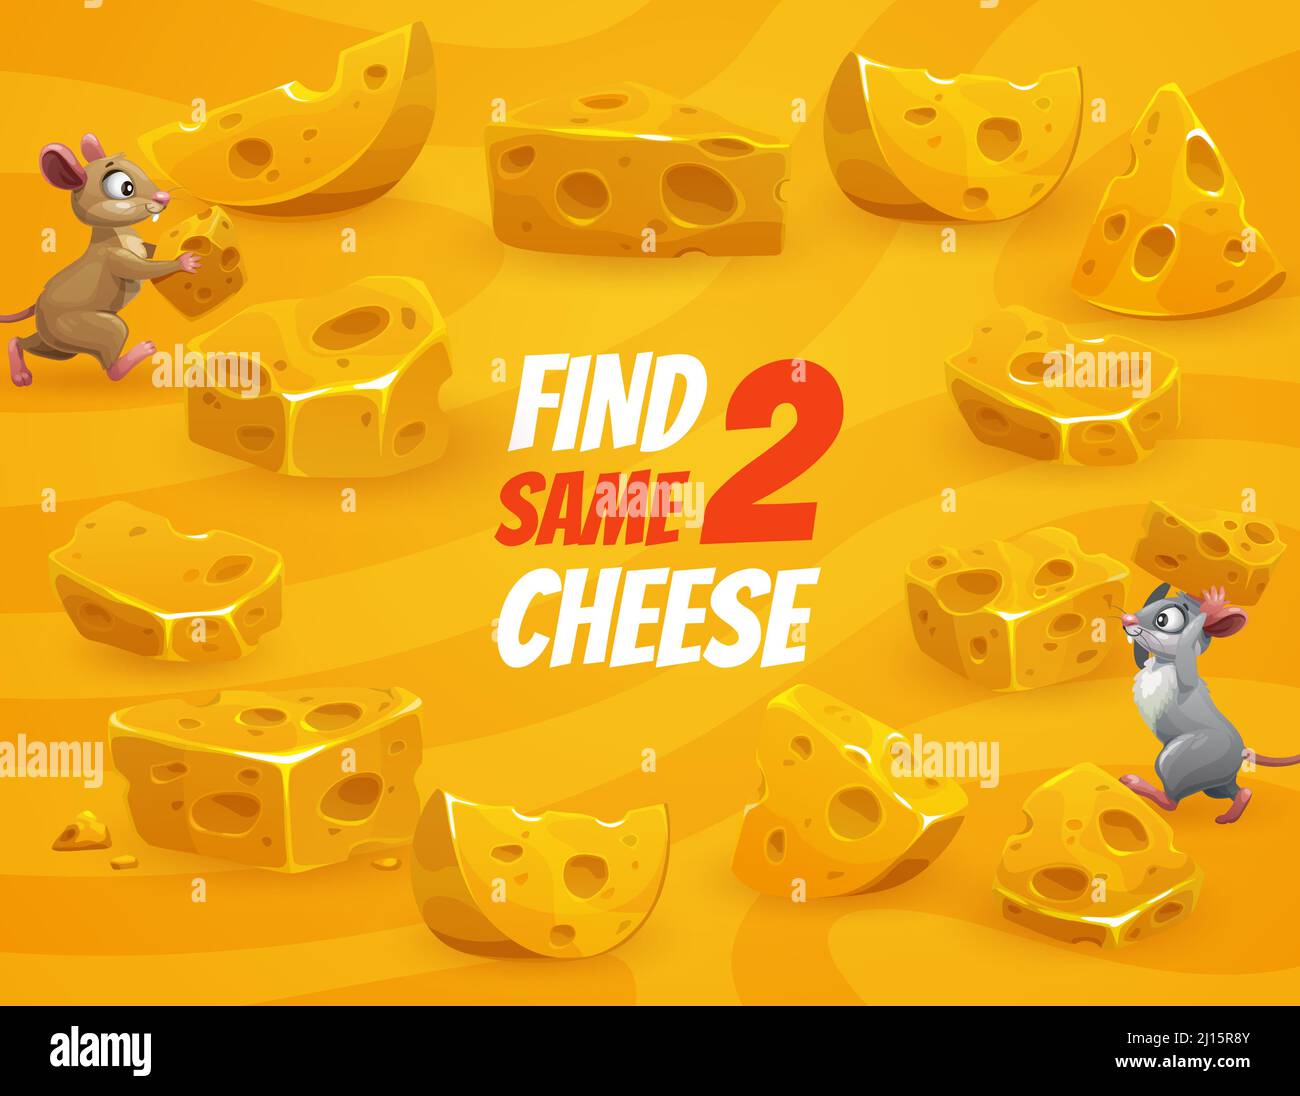 Trouvez deux pièces de fromage identiques puzzle de jeu pour enfants.  Feuille de travail vectorielle de l'éducation énigme, test d'attention ou  jeu-questionnaire assorti avec dessin animé drôle de souris et de rat